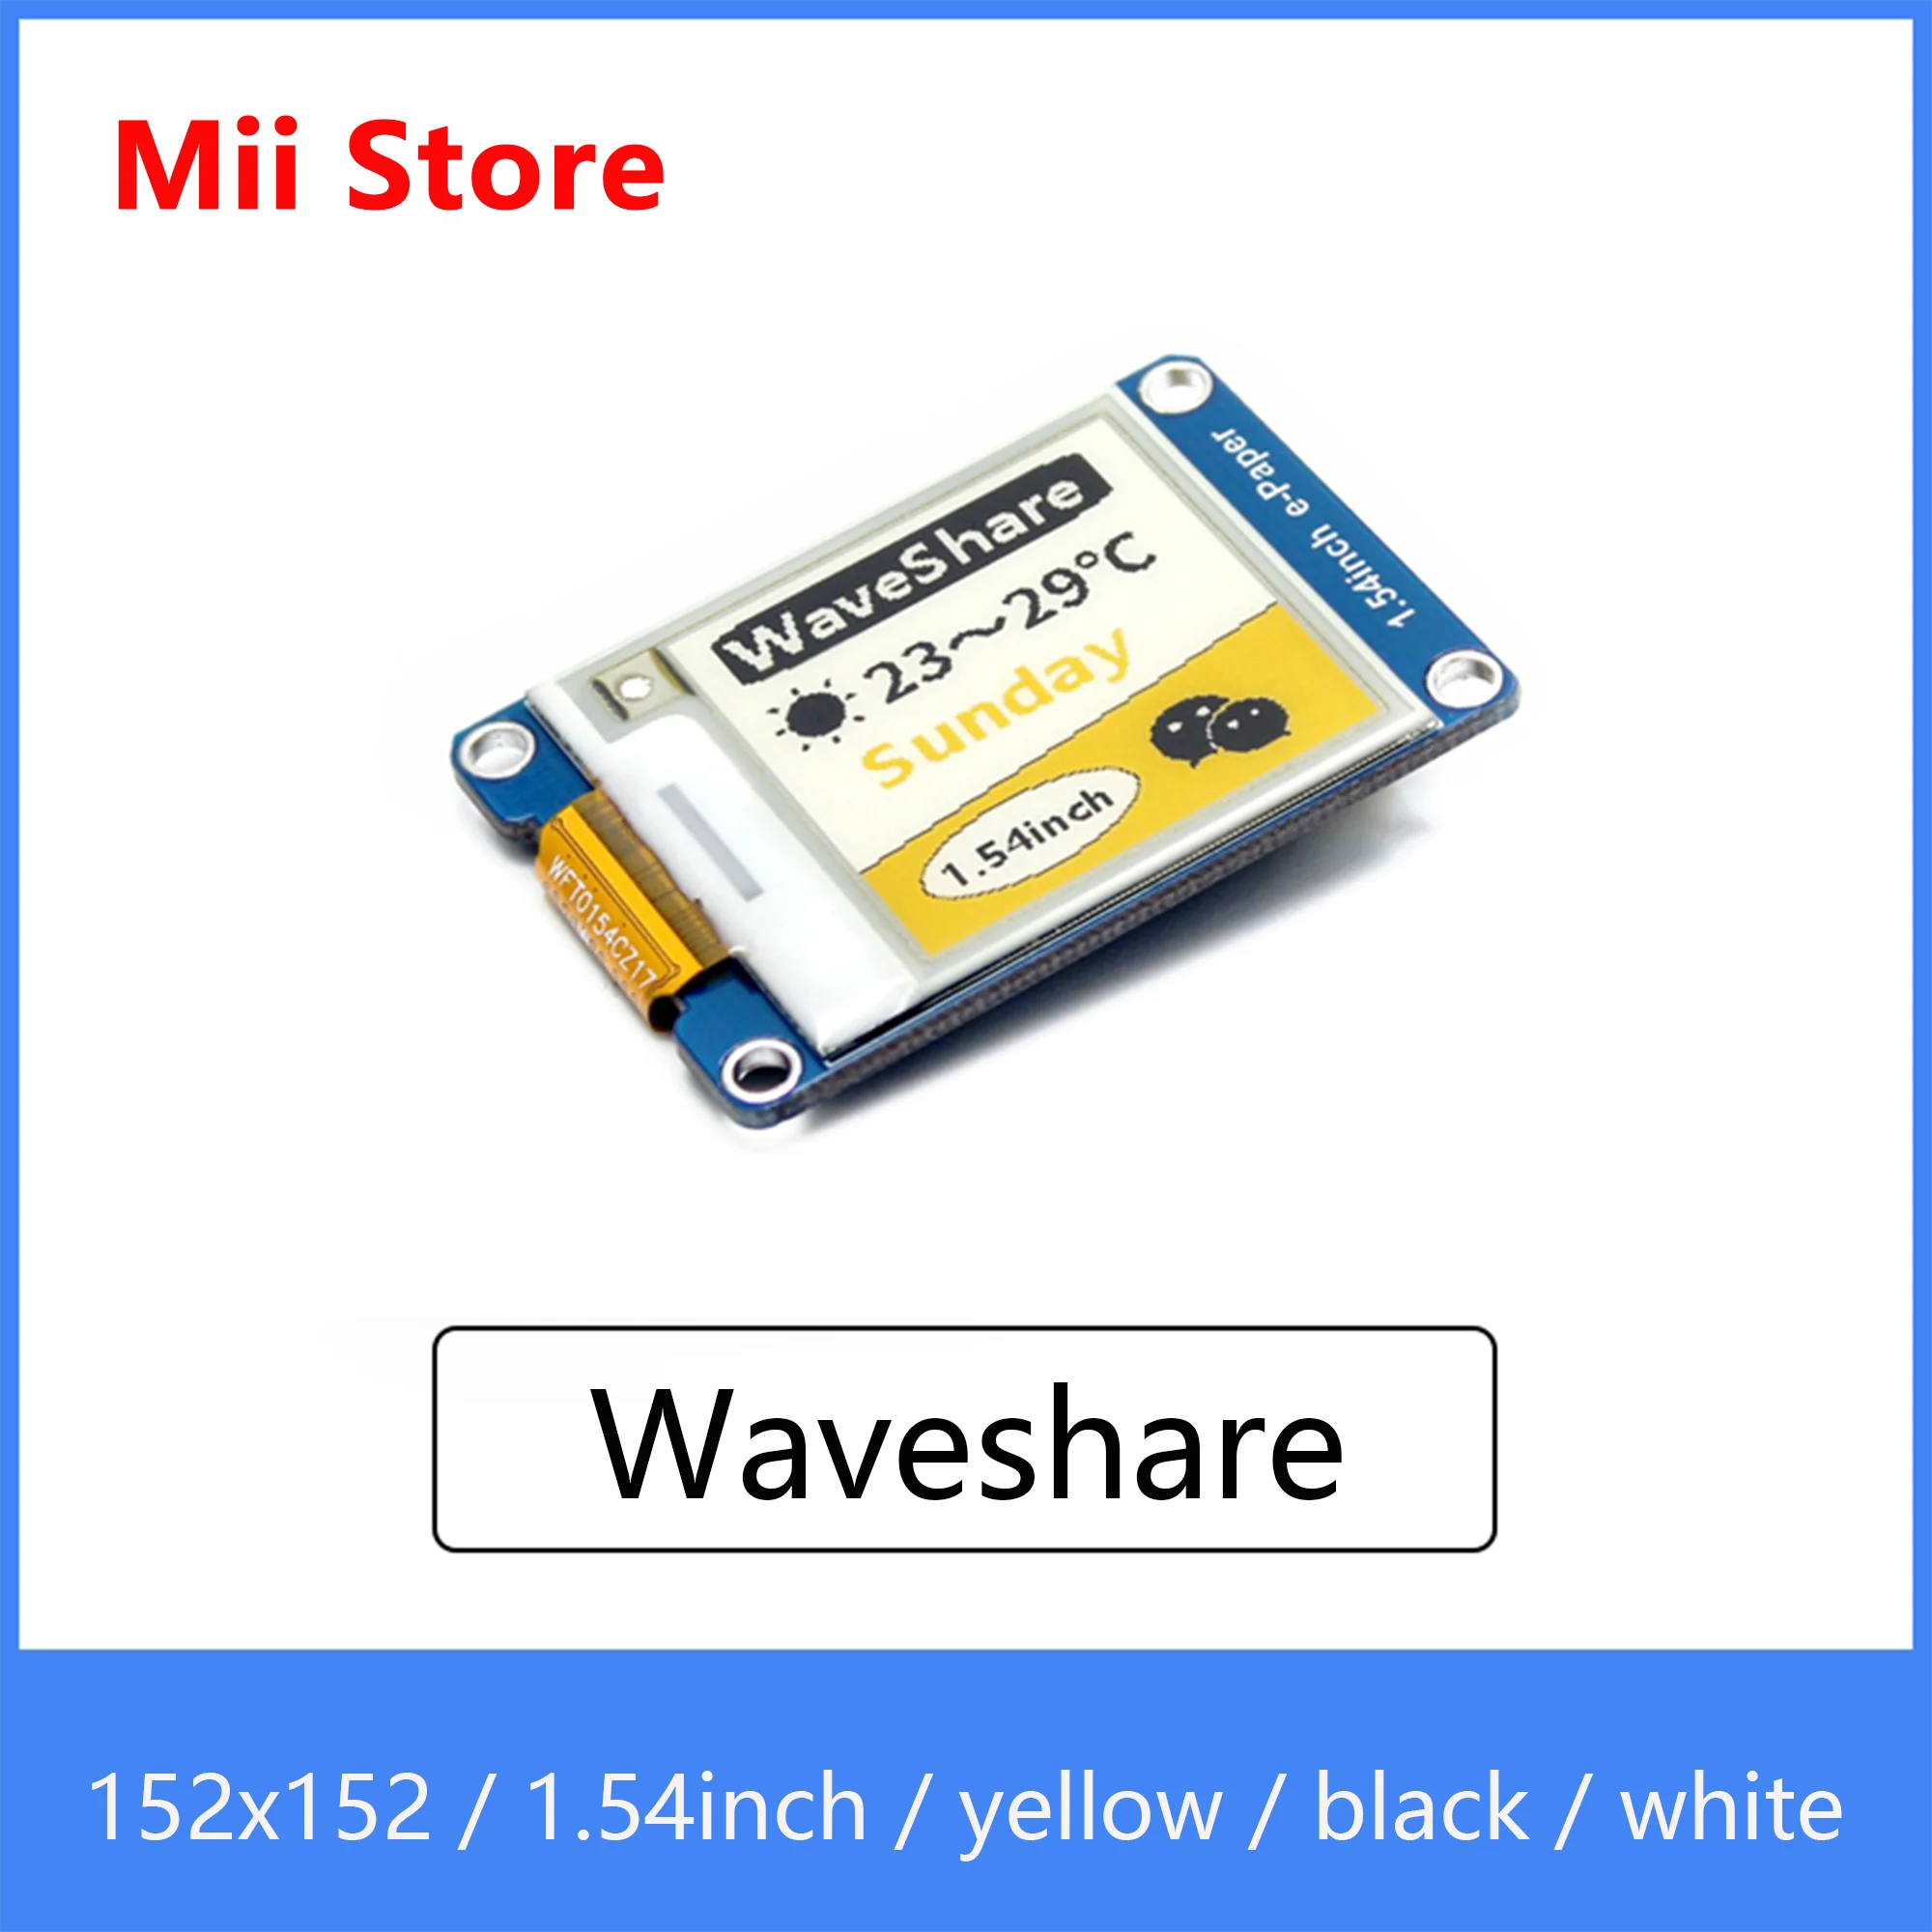 

Дисплейный модуль Waveshare 1,54 дюйма с электронными чернилами, трехцветный, желтый, черный, белый дисплей с электронной бумагой для интерфейса Raspberry Pi / STM32 SPI